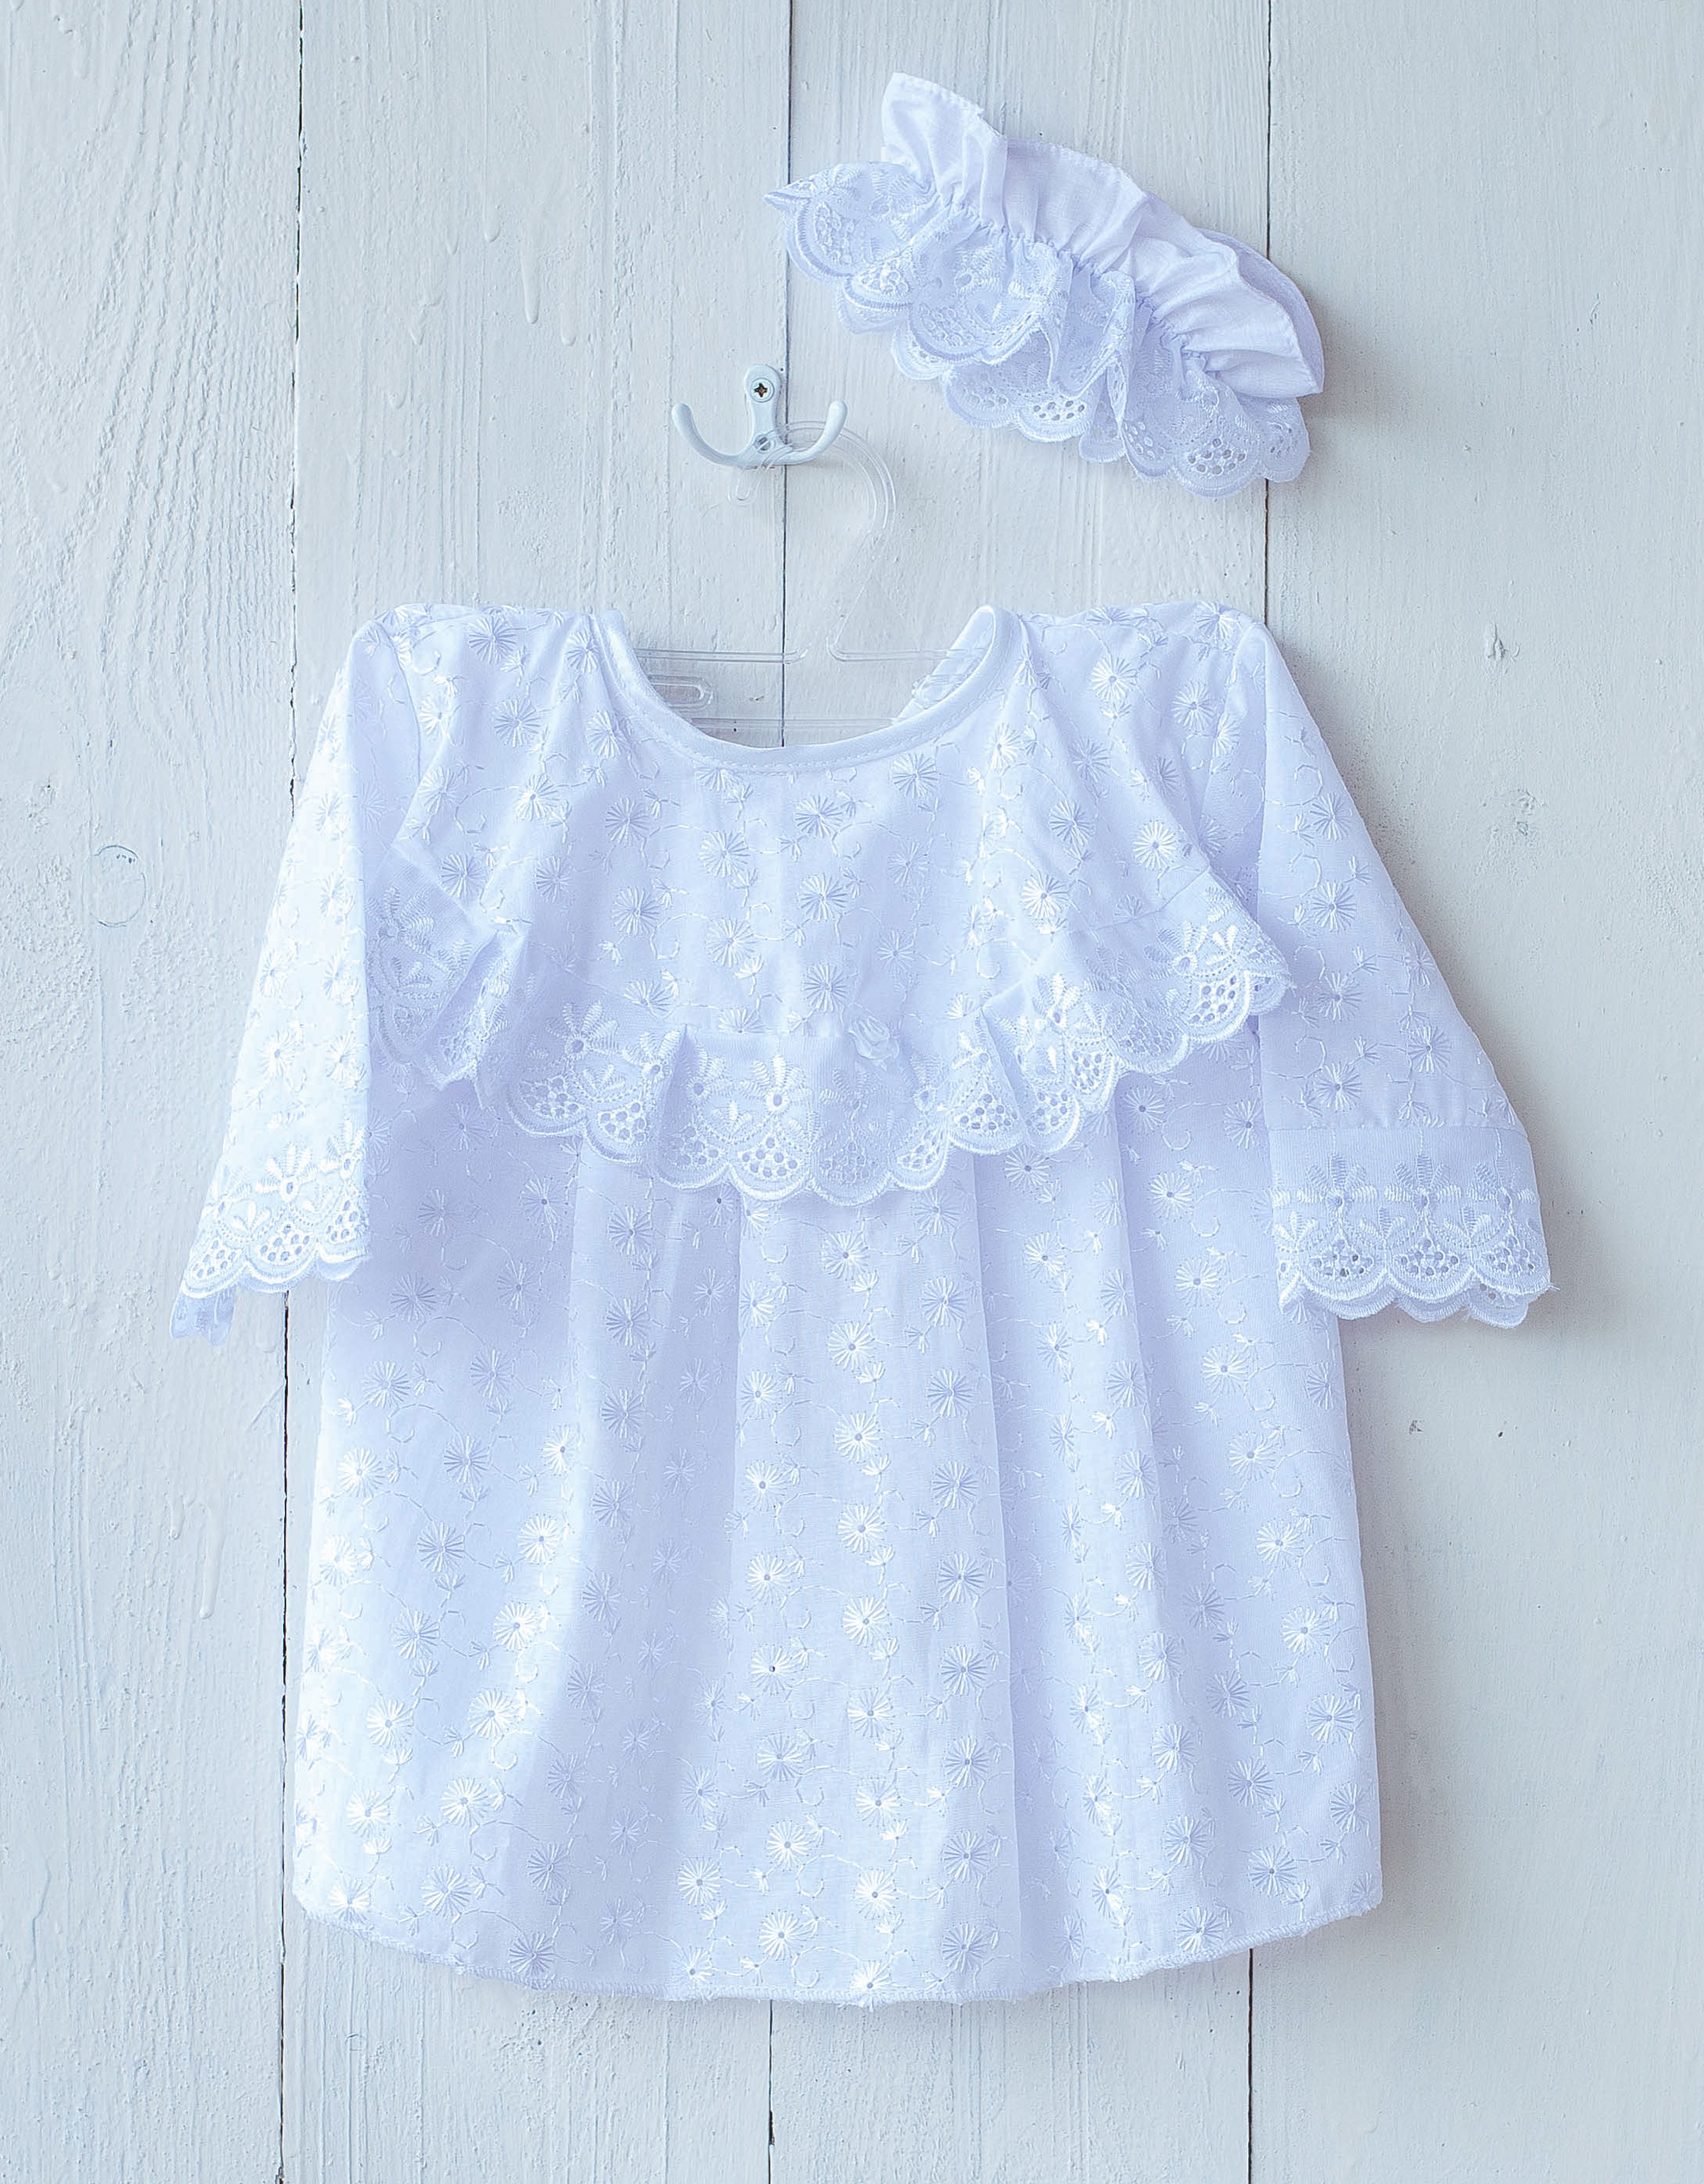 Г412-74 Крестильный комплект для девочки р.74 Однотонное платье, повязка,вышитое полотно -100% хлопок,на 1 годик, в подарочной упаковке.